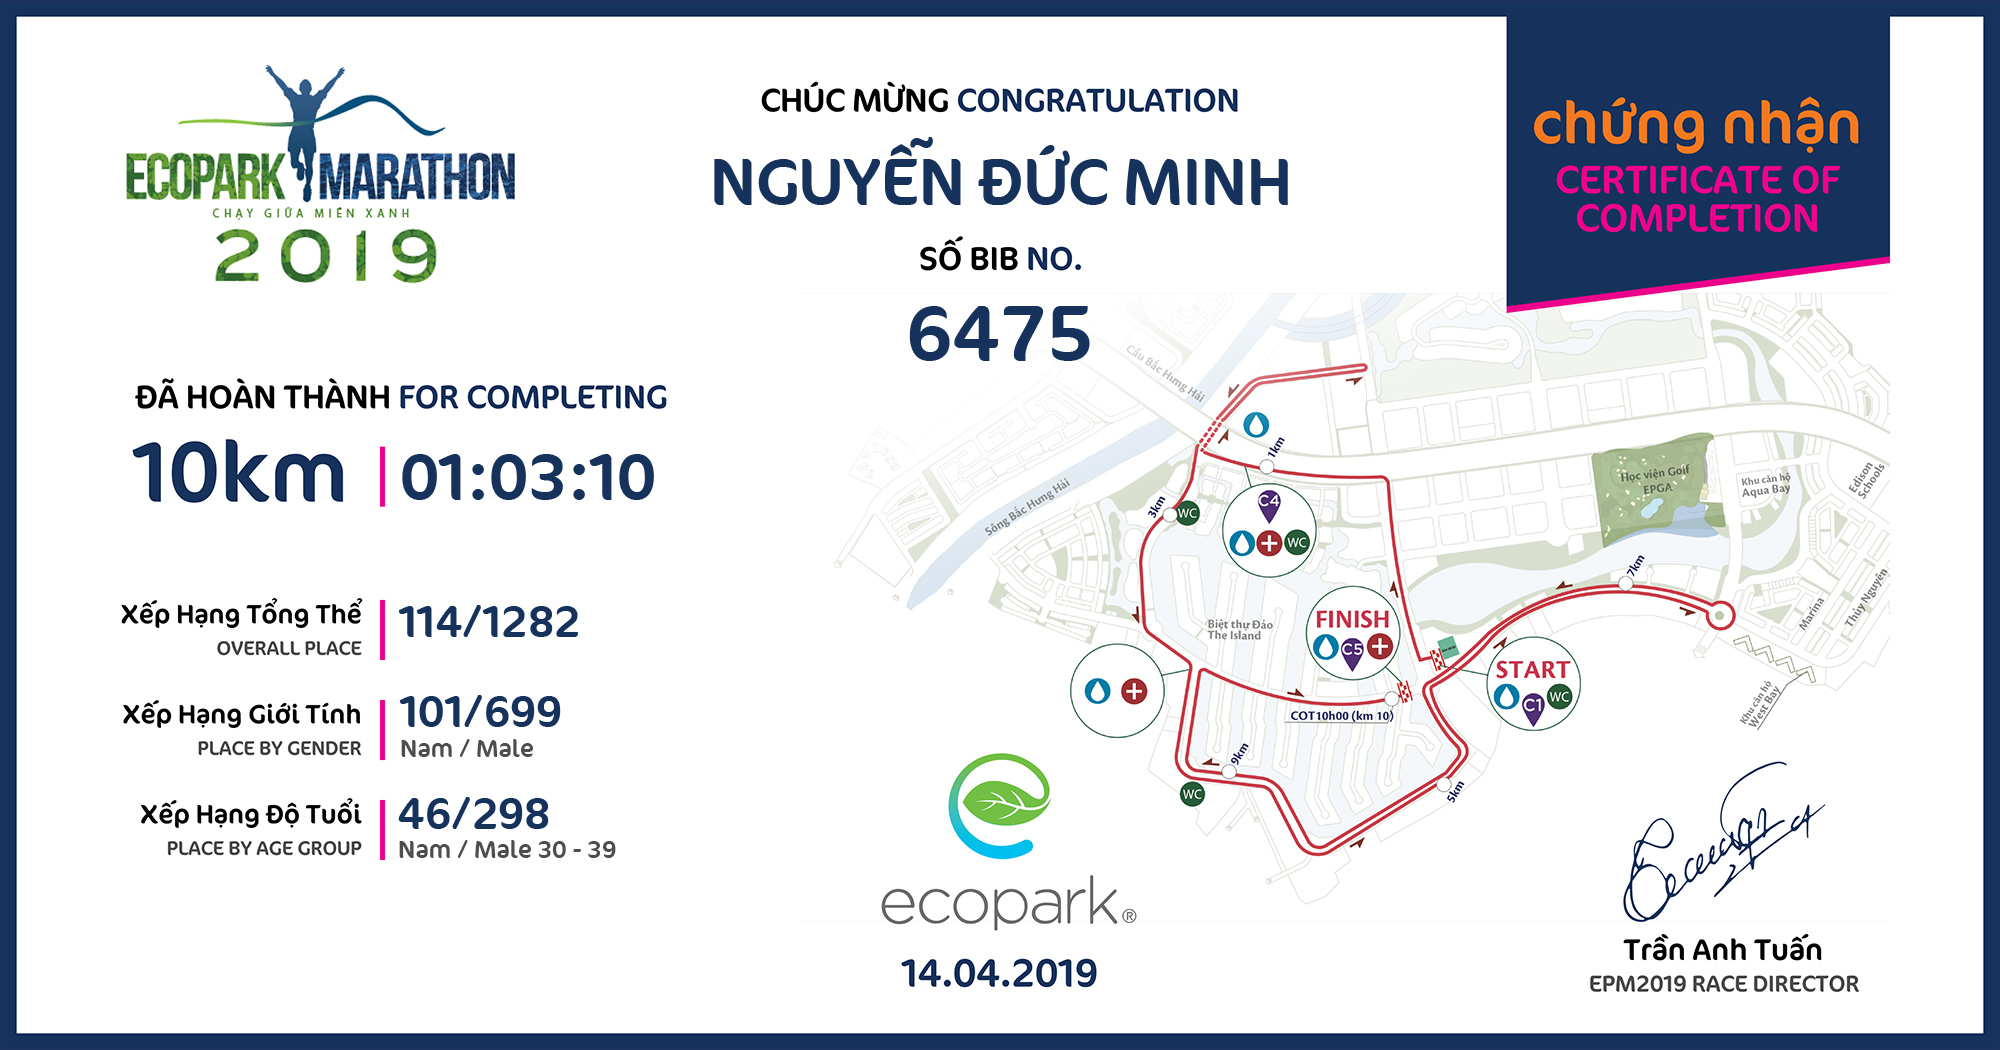 6475 - Nguyễn Đức Minh